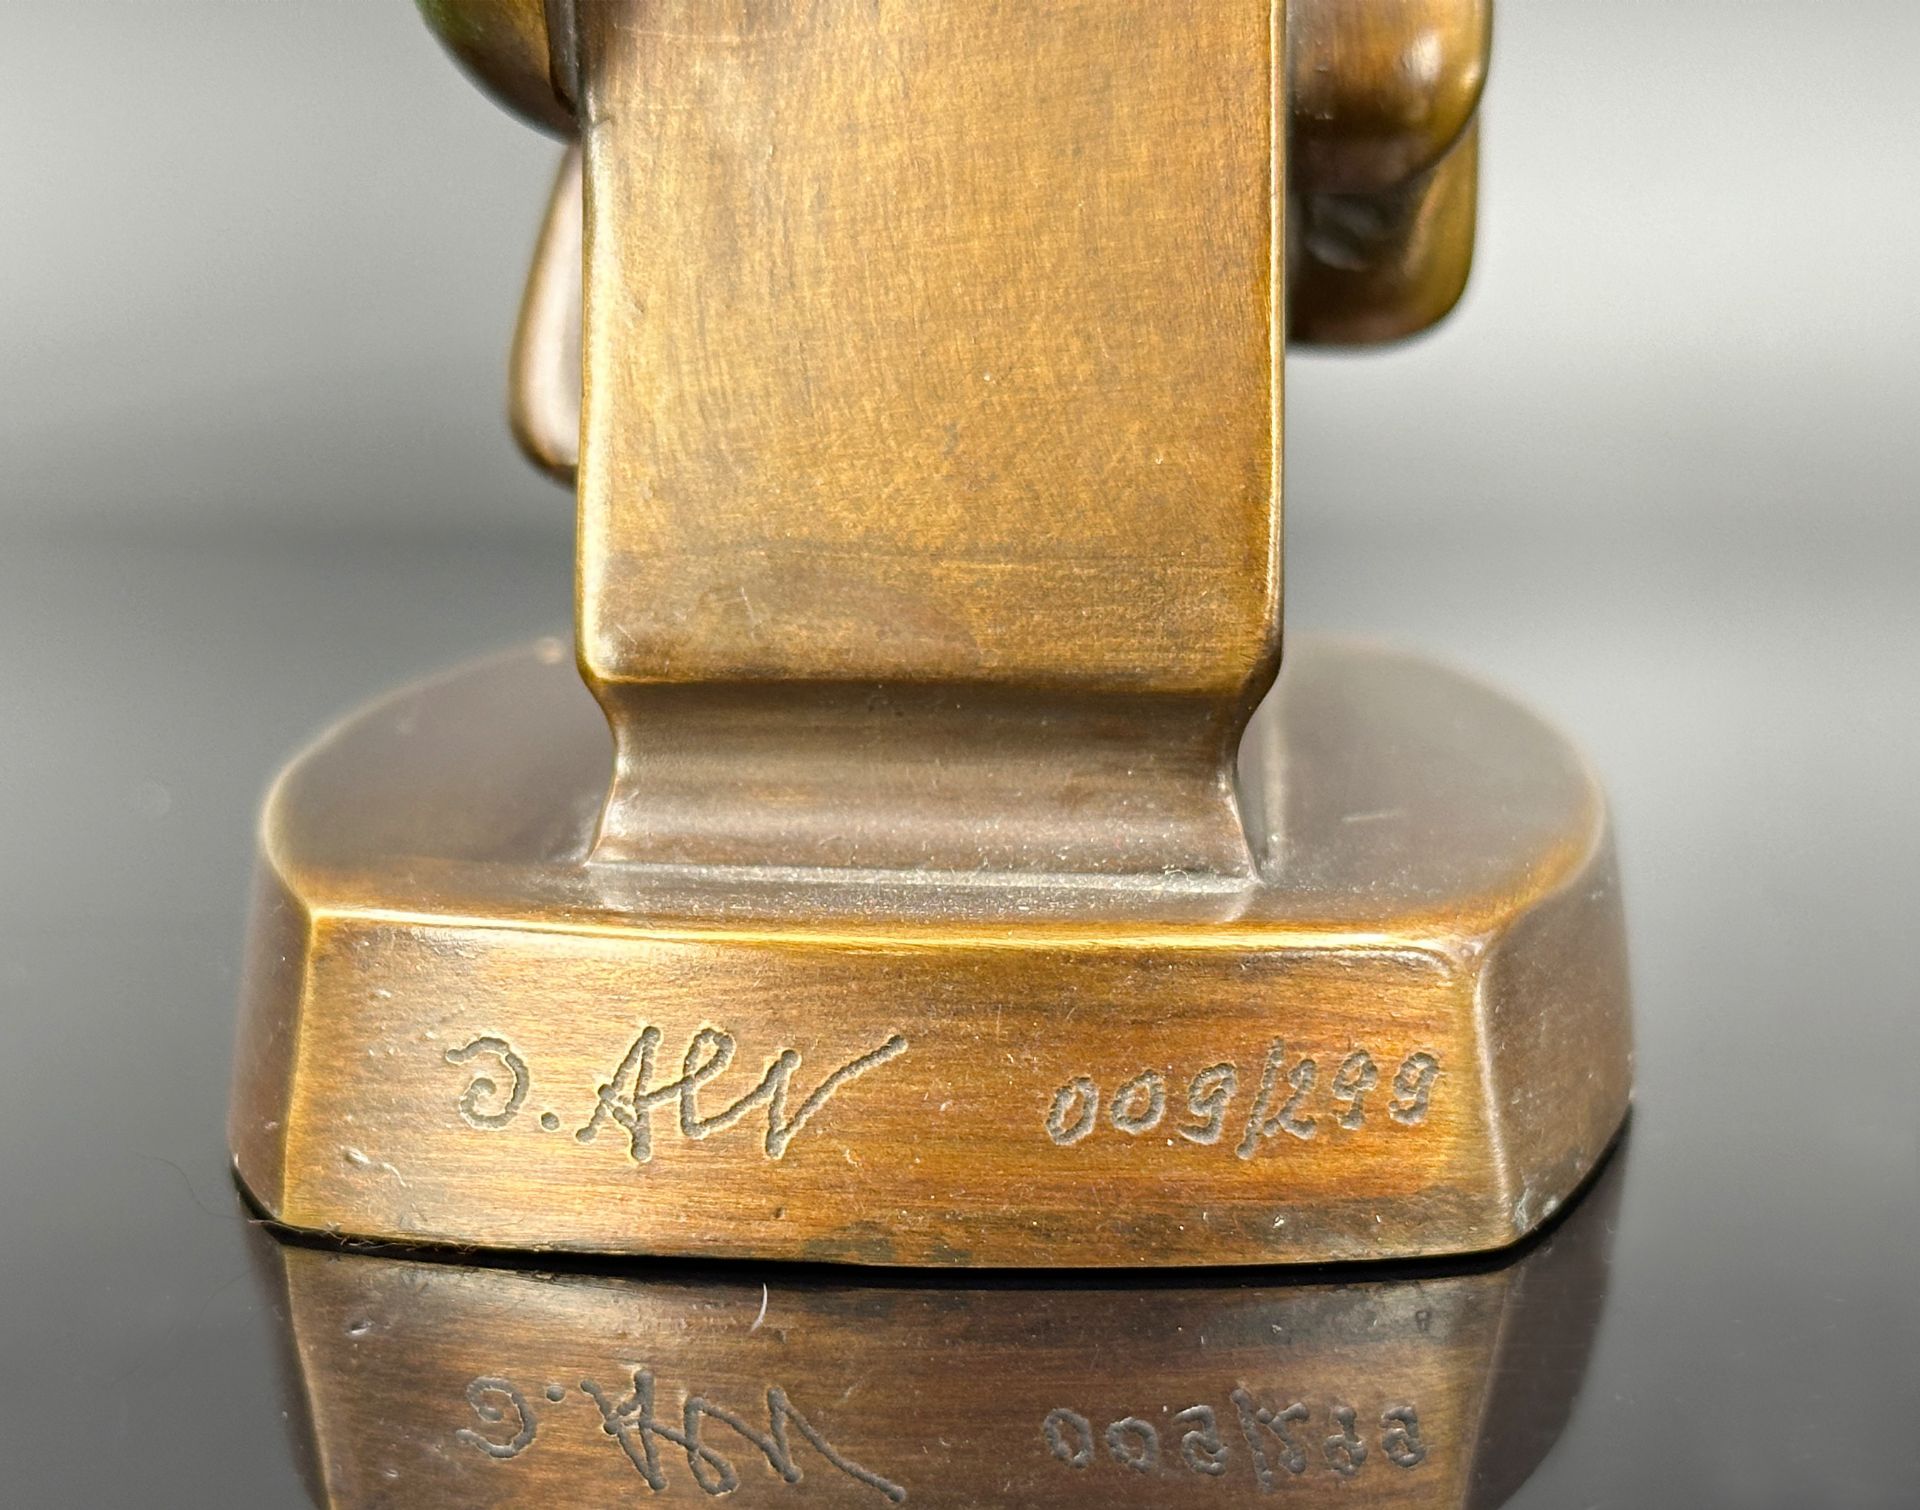 Otmar ALT (1940). Bronze. "The watchman". 2005. - Image 7 of 8